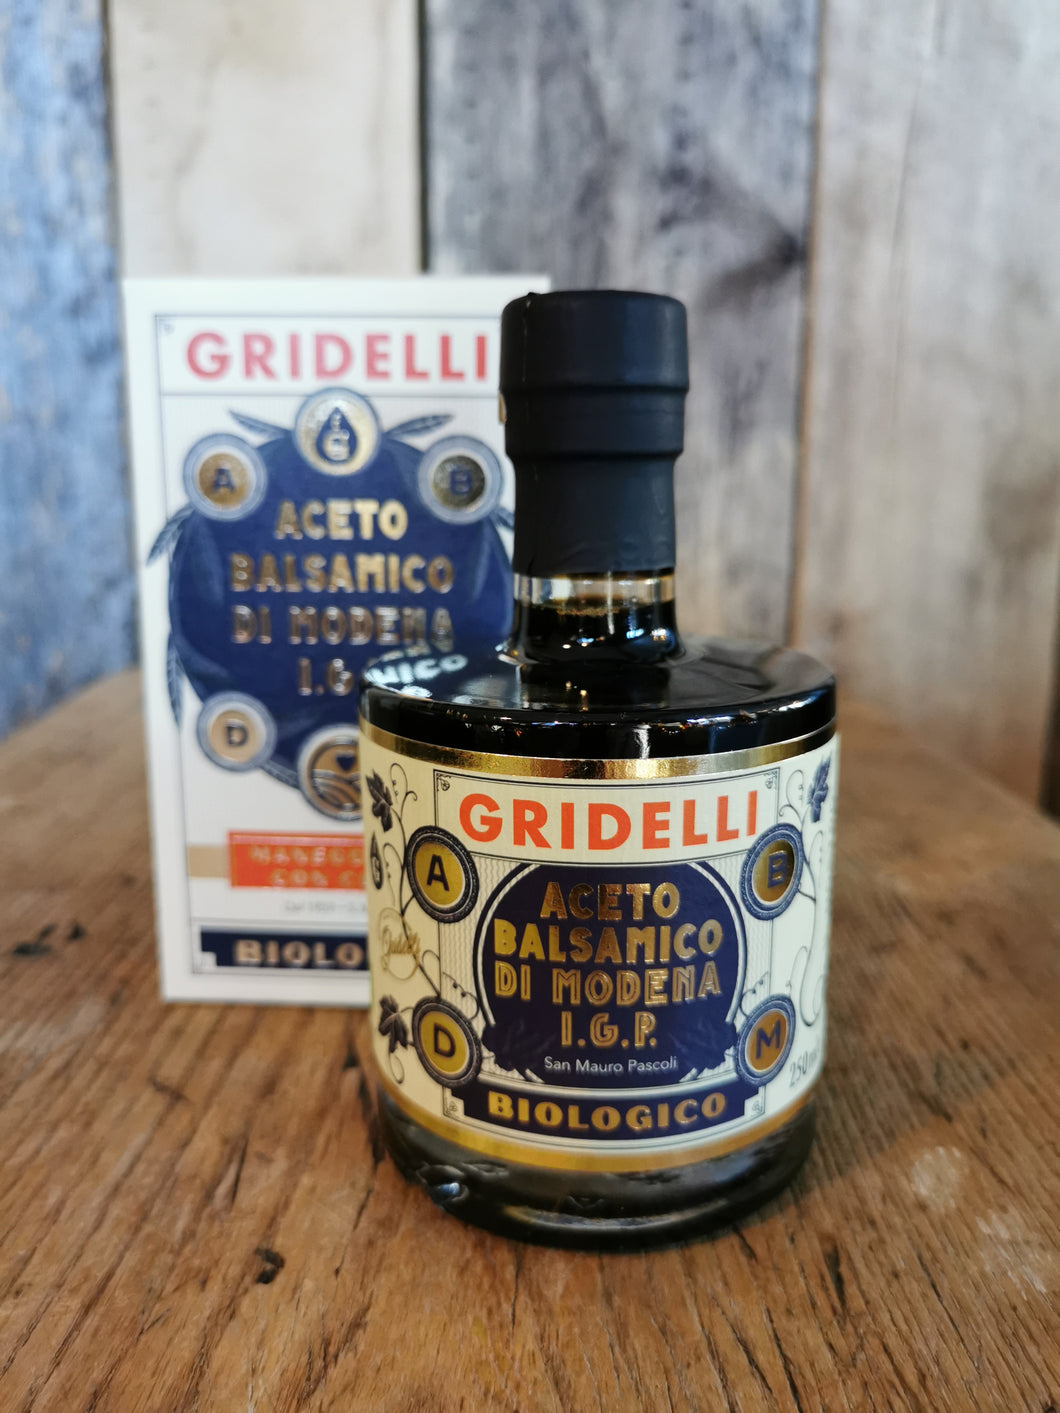 Gridelli- Aceto balsamico nero